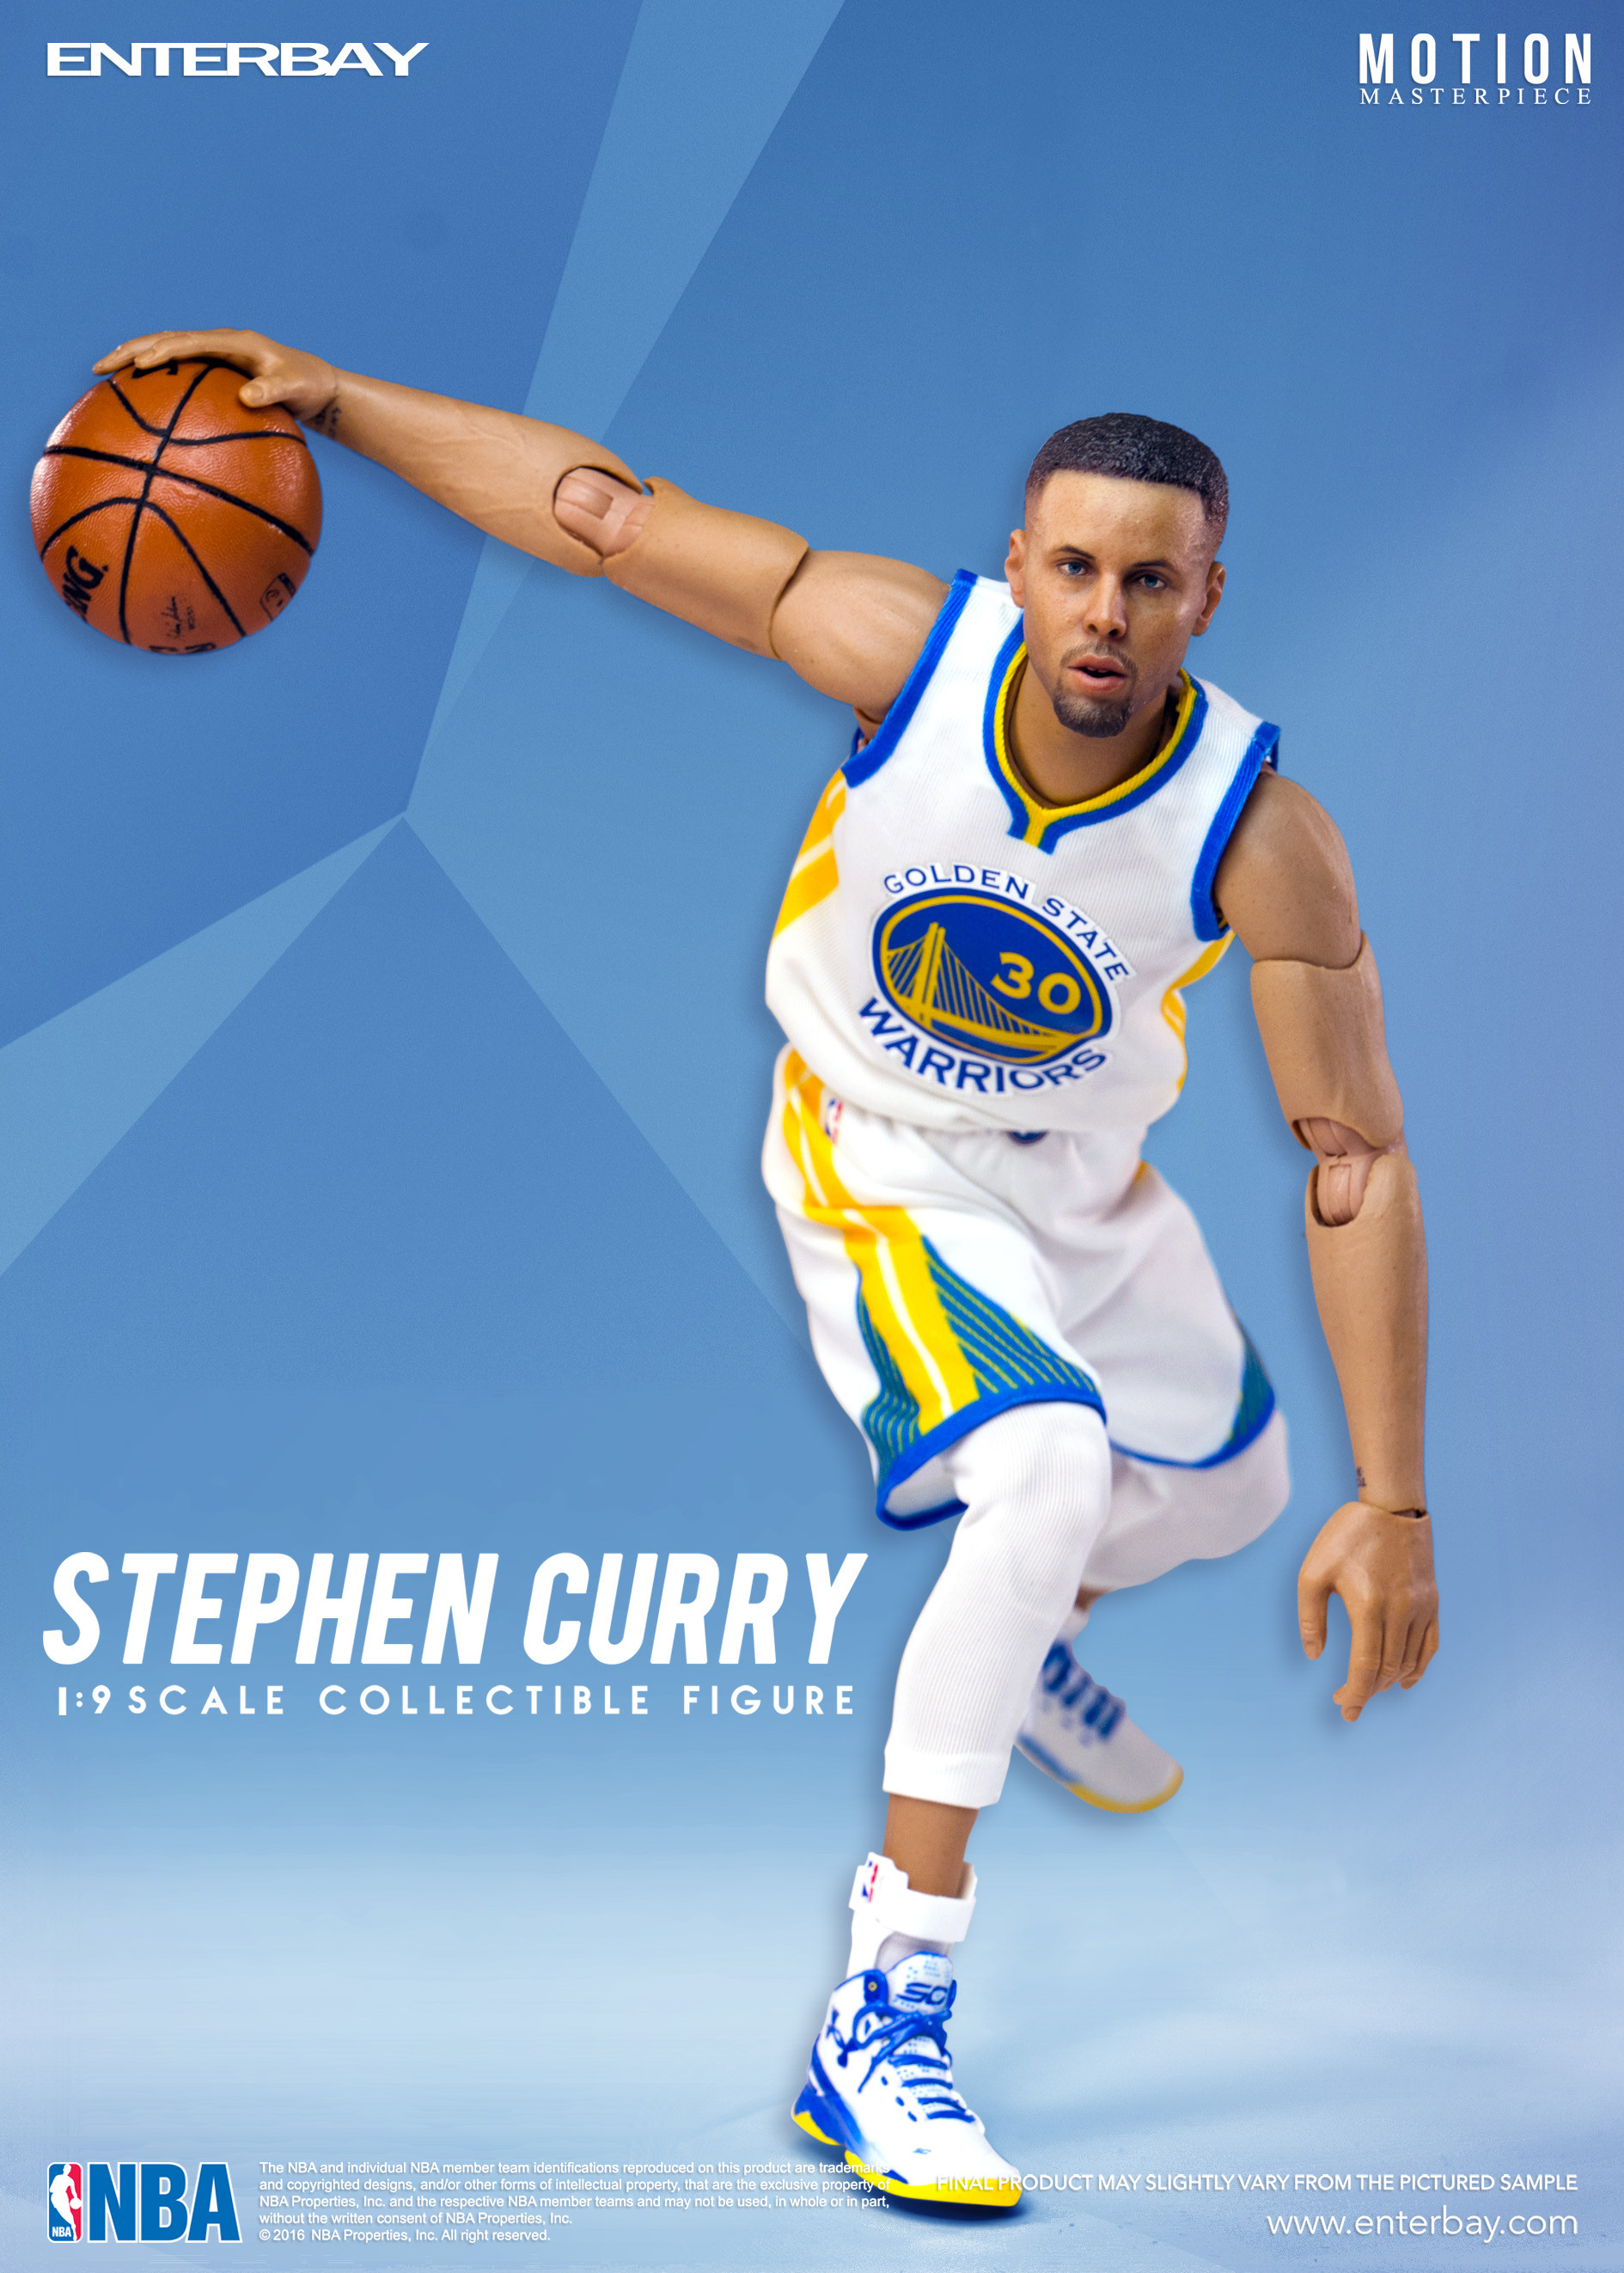 steph curry live wallpaper,basketball spieler,spieler,sport,sportbekleidung,basketball